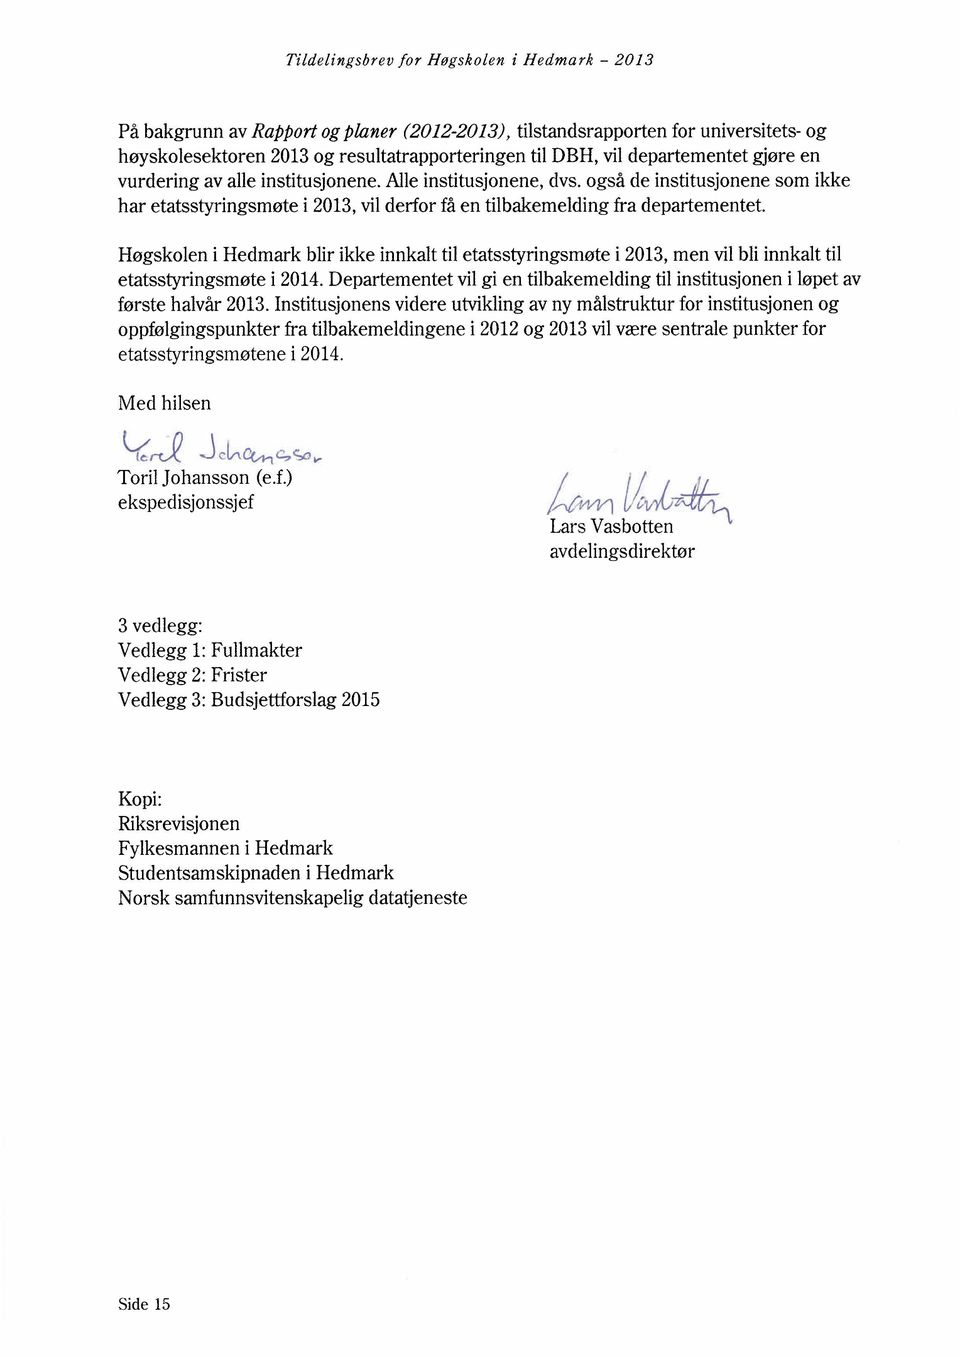 Høgskolen i Hedmark blir ikke innkalt til etatsstyringsmøte i 2013,men vil bli innkalt til etatsstyringsmøte i 2014.